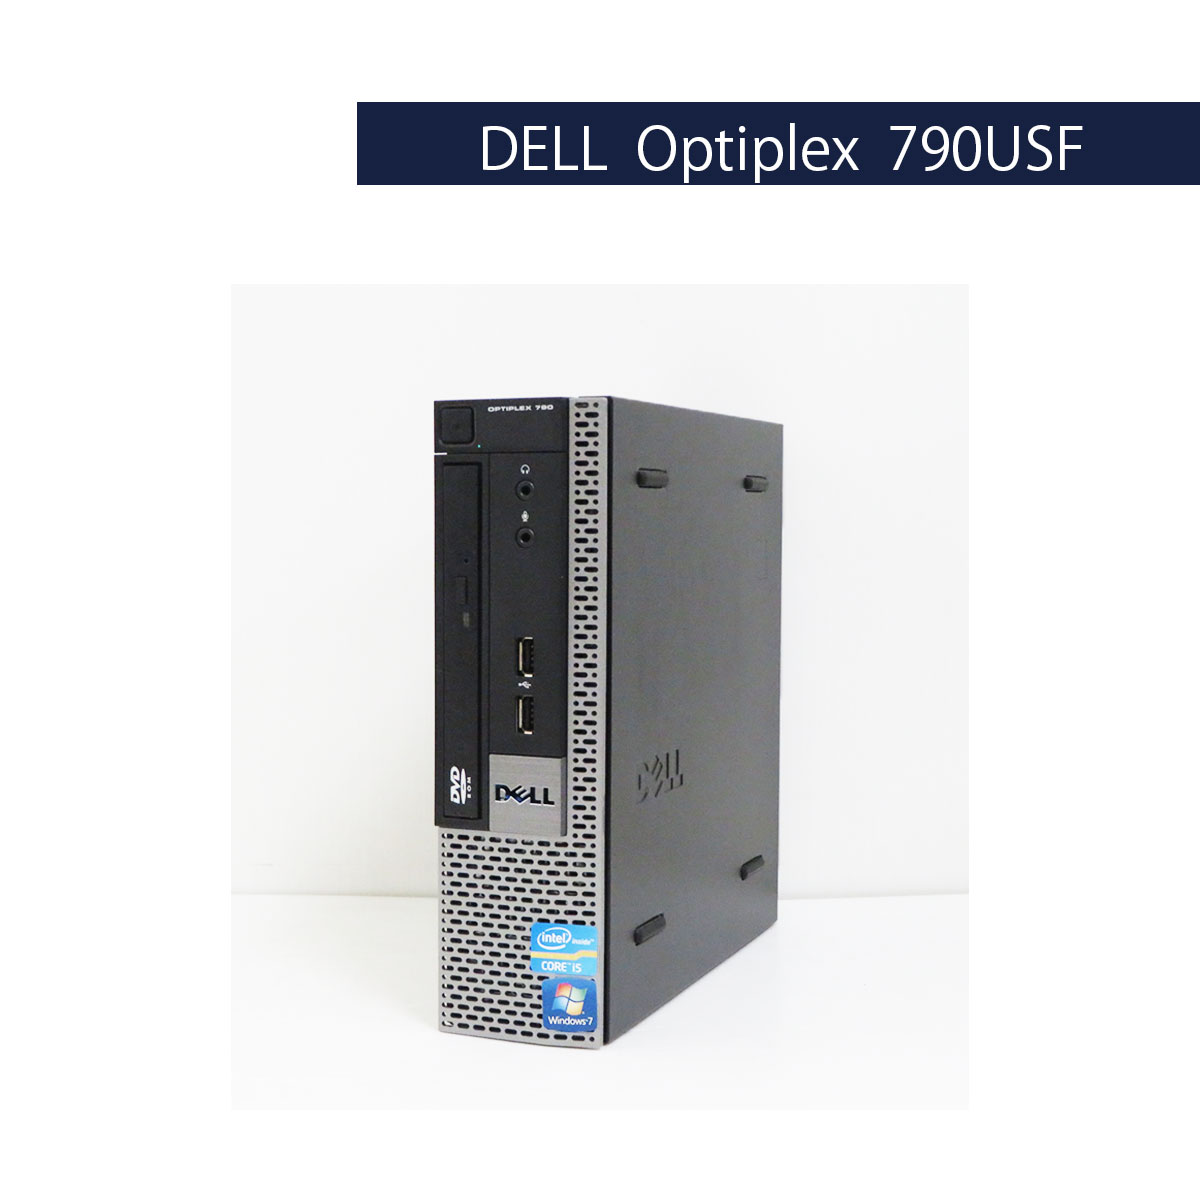 DELL Optiplex 790USF Core i5 2500S (Win10)